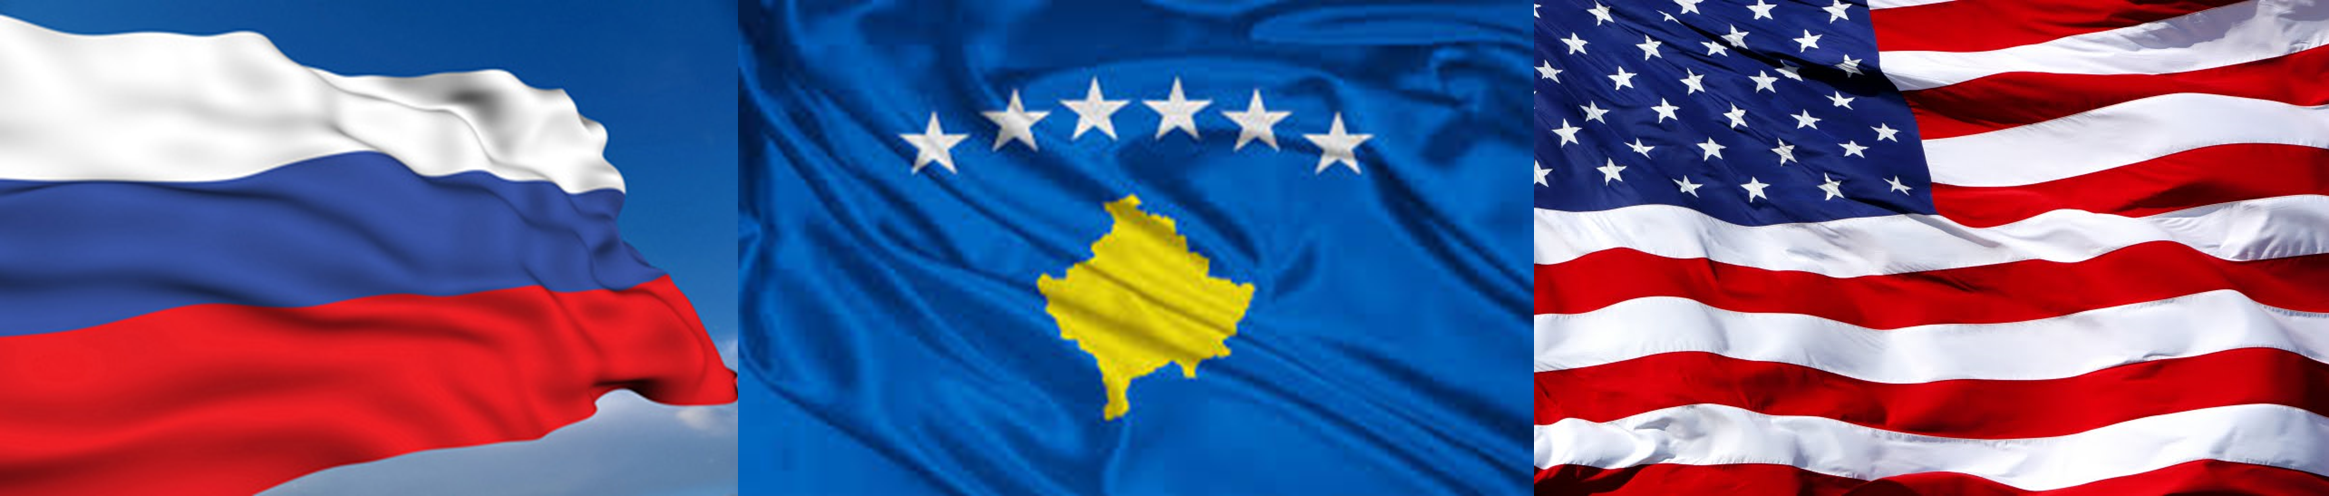 Tensiones entre Rusia y EE.UU. por entrada de Kosovo a la Unesco